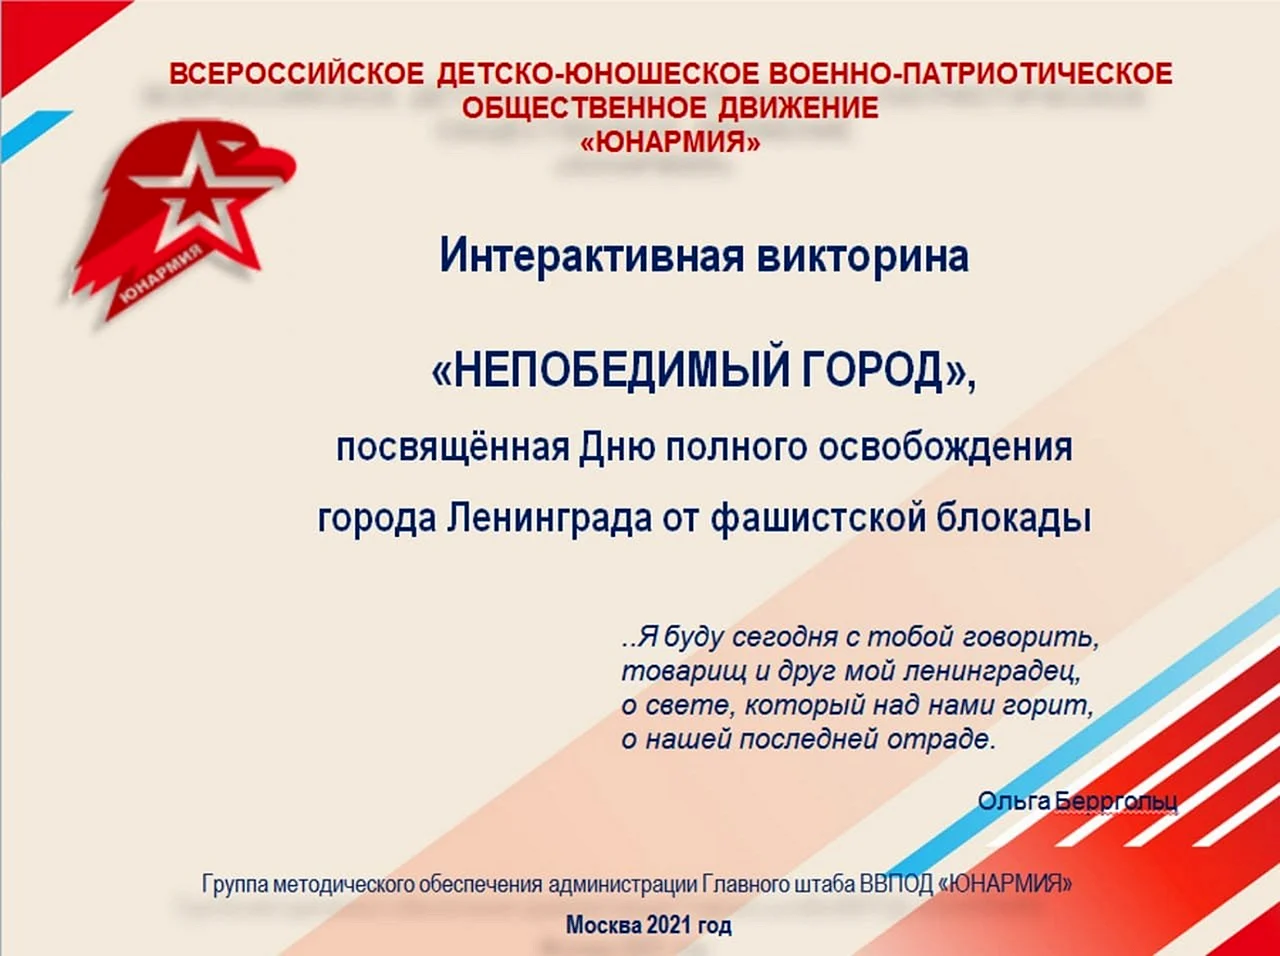 Всероссийское военно-патриотическое Общественное движение Юнармия